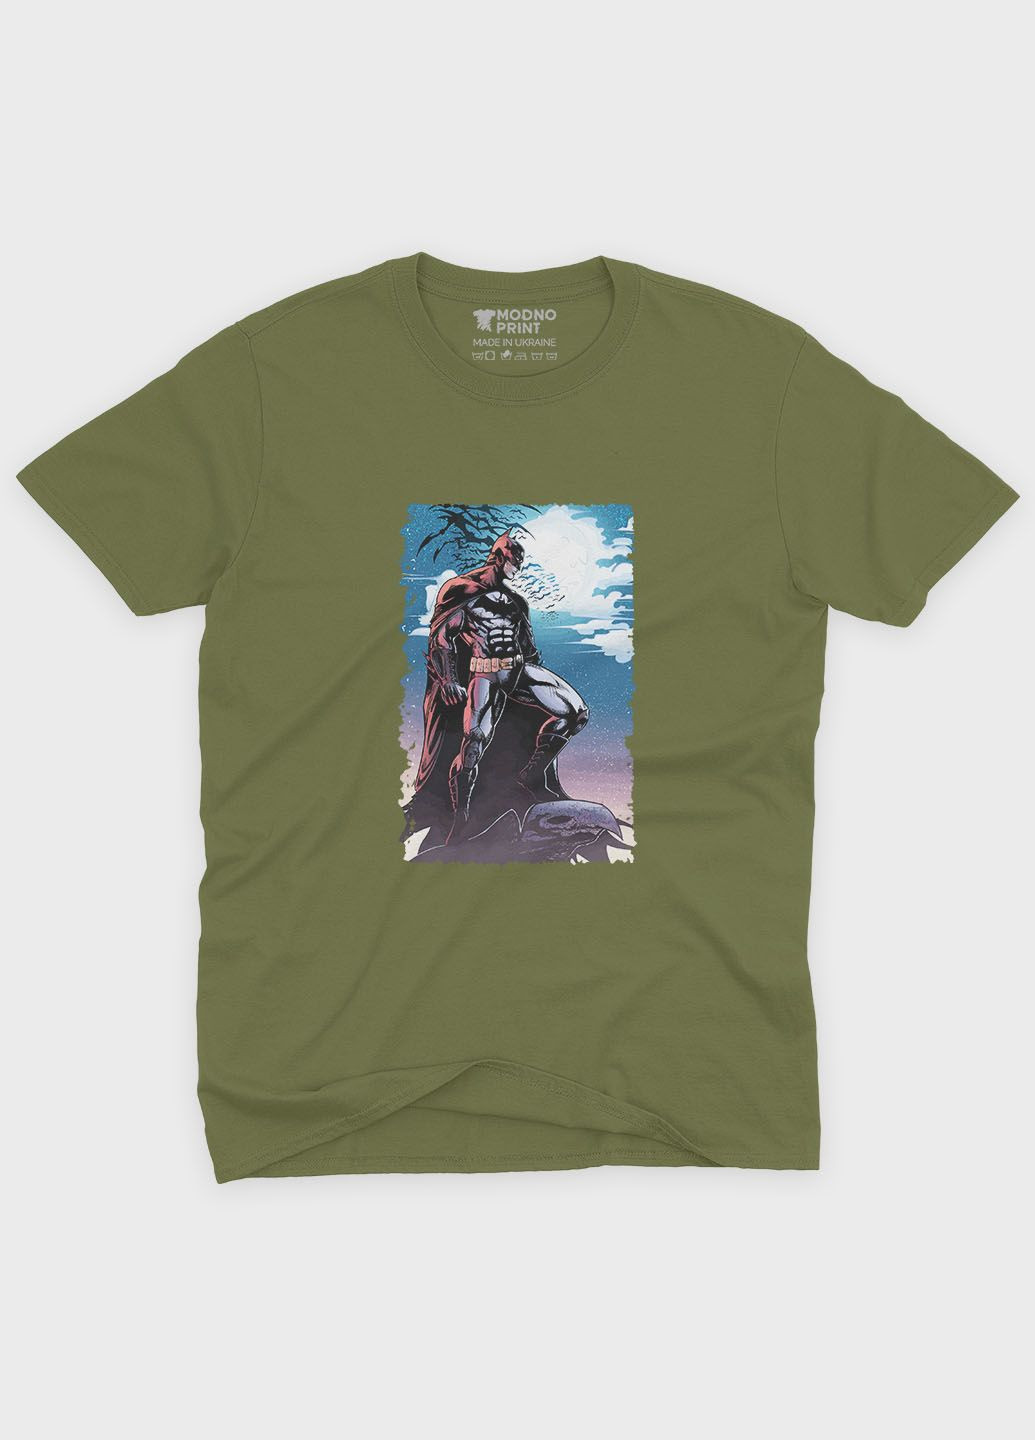 Хаки (оливковая) мужская футболка с принтом супергероя - бэтмен (ts001-1-hgr-006-003-002) Modno